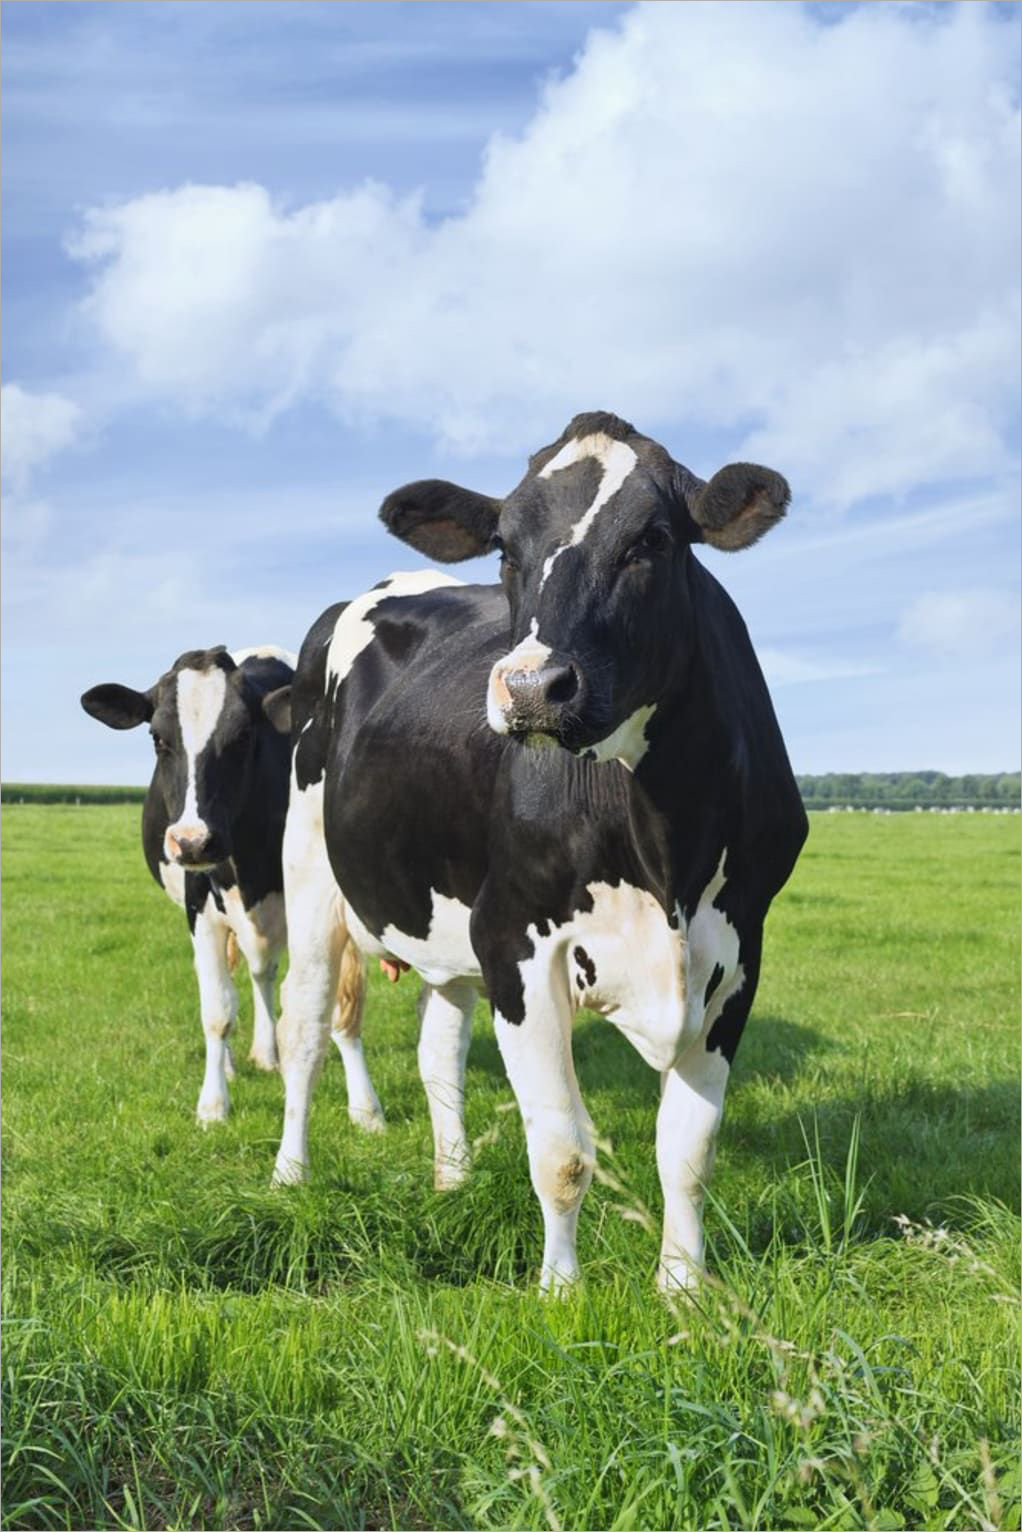 Hình ảnh bò sữa trên đồng cỏ đẹp nhất